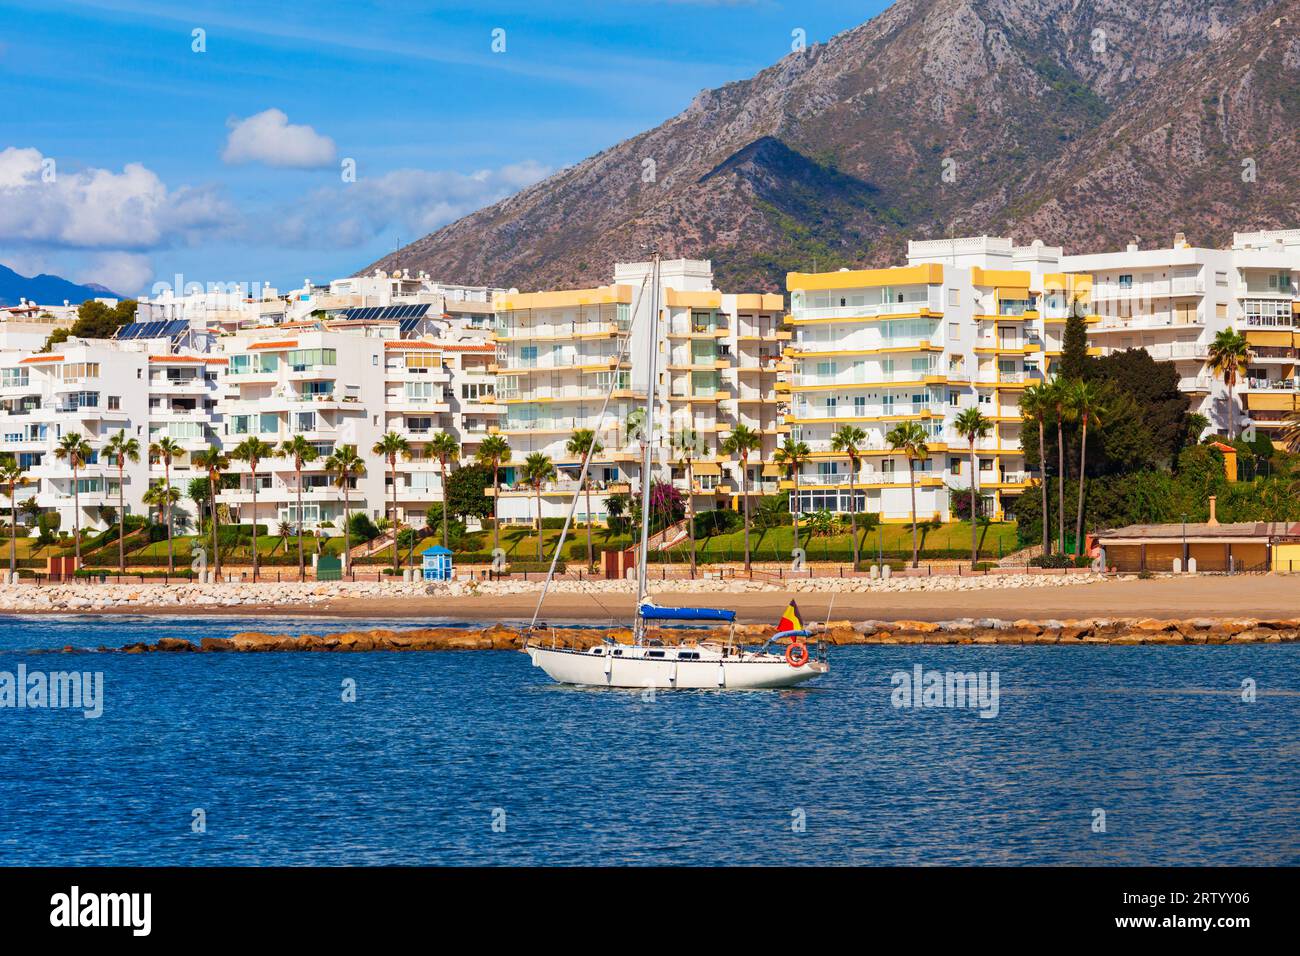 Marbella plage et marina. Marbella est une ville de la province de Malaga en Andalousie, en Espagne. Banque D'Images